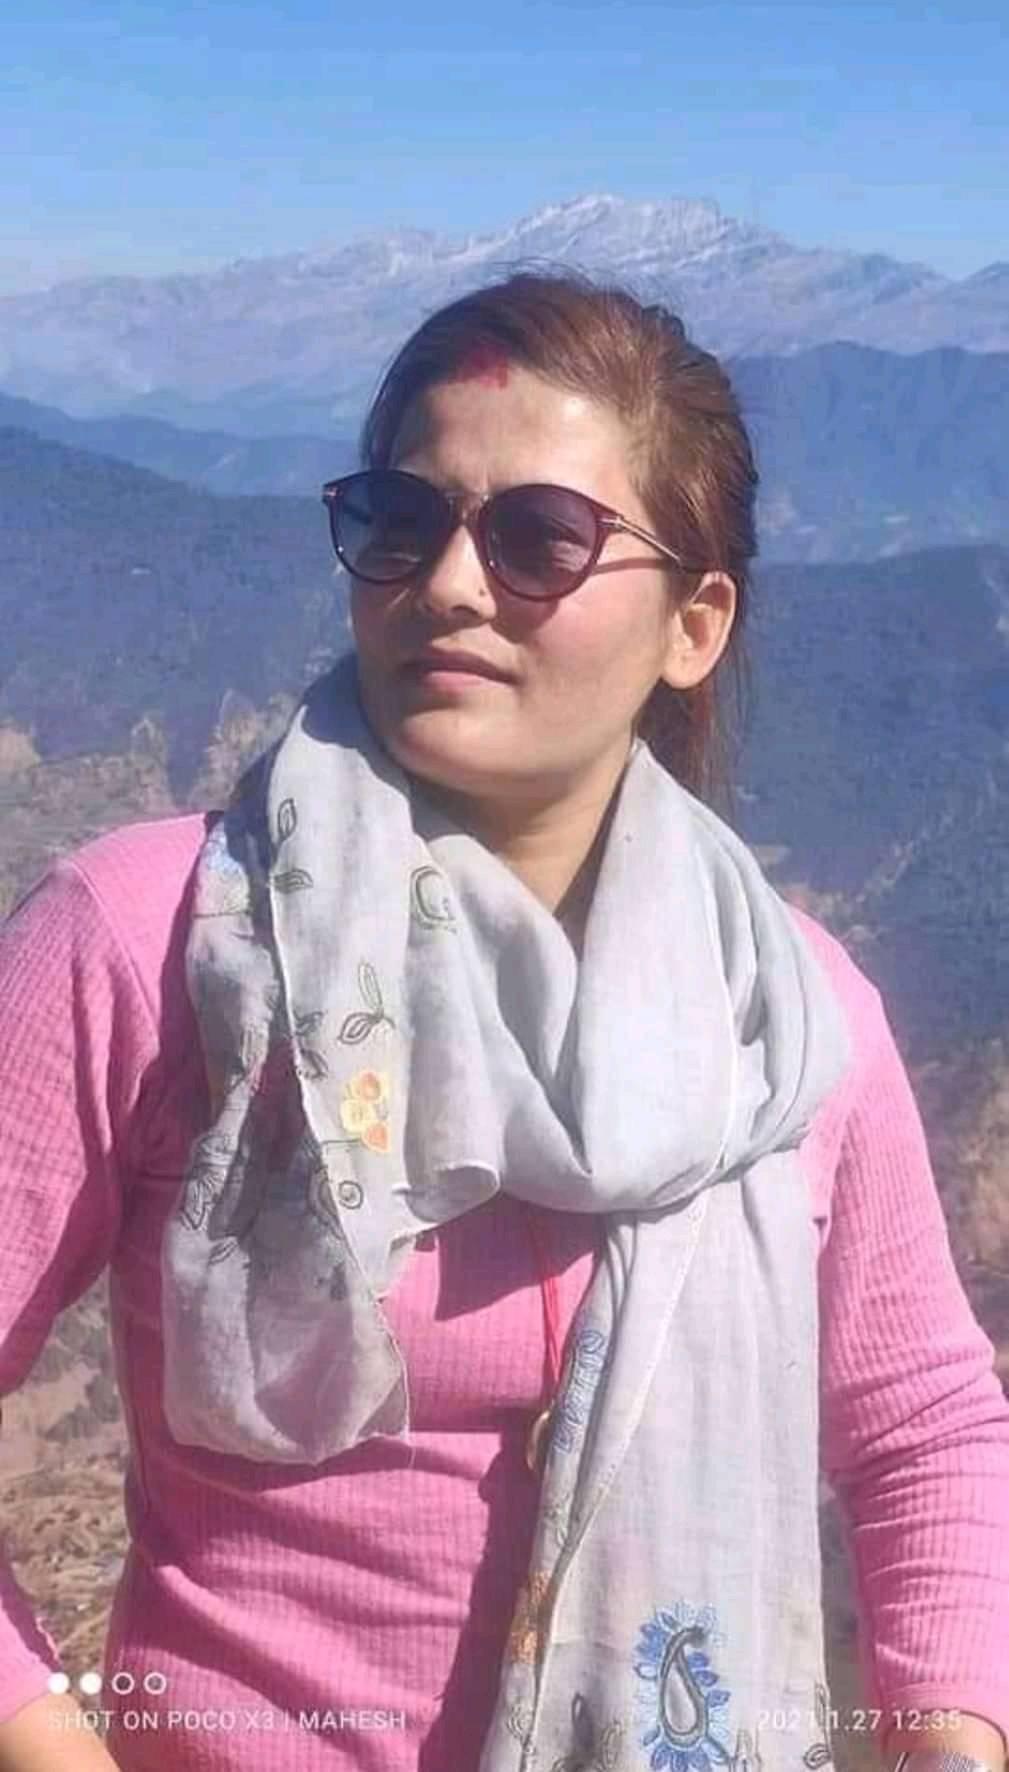 युवा संगठनका महासचिव विदुषी काठमाडौँबाट र कास्कीमा २ विद्यार्थी गिरफ्तार